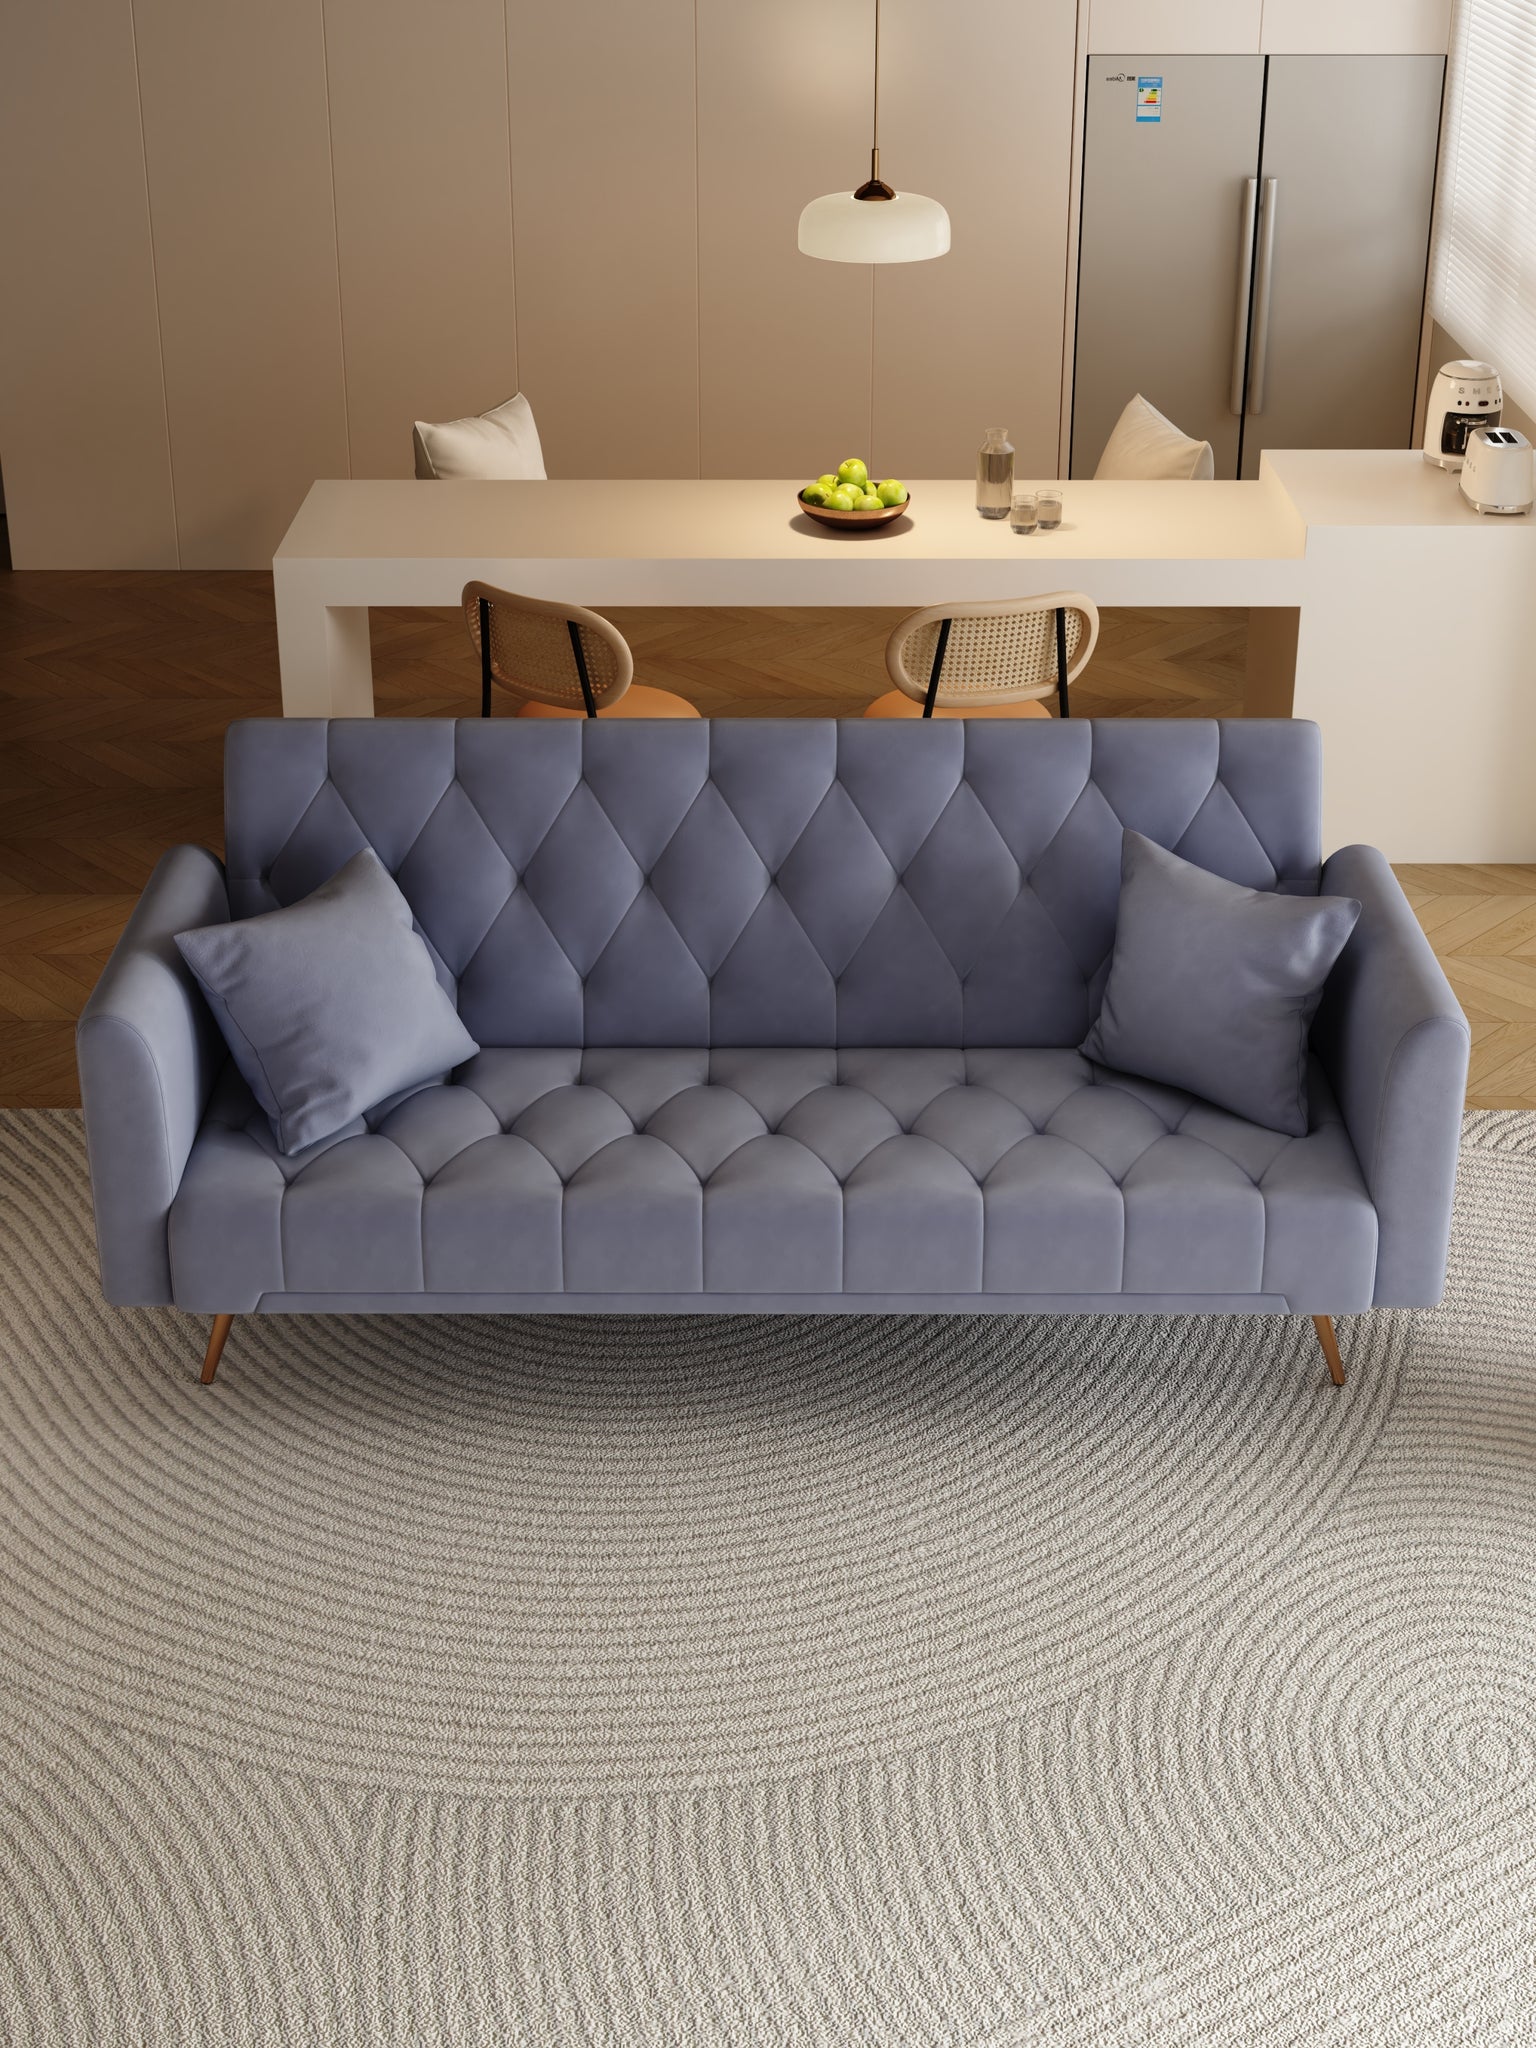 71" Convertible Double Folding Living Room Sofa Bed gray-velvet